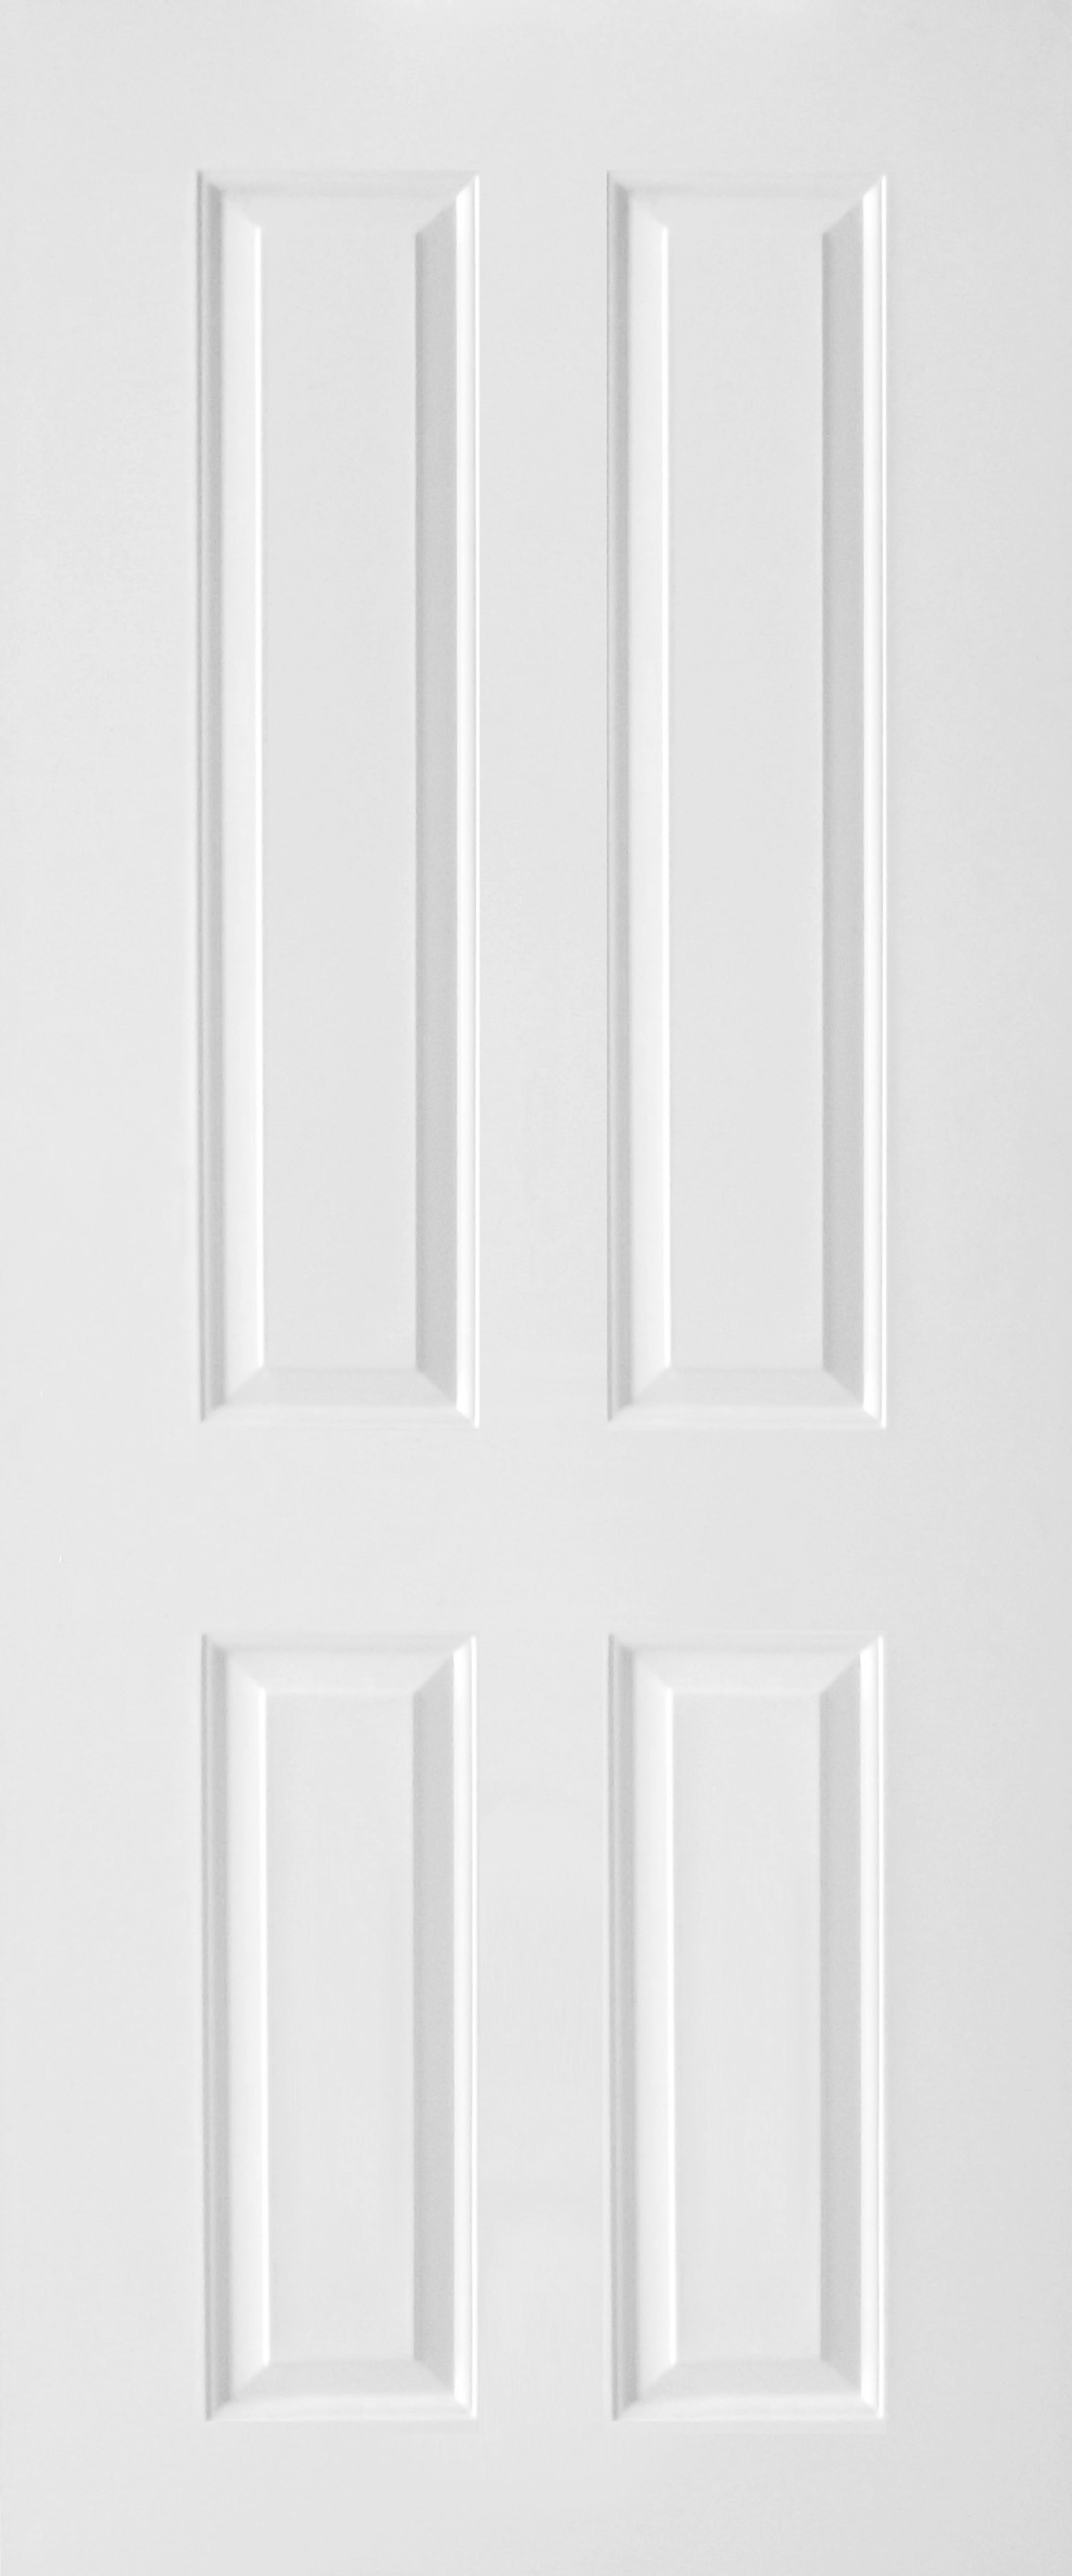 ประตูไม้ HDF บานลูกฟัก 4 ช่องตรง ขนาด 80x200 ซม.